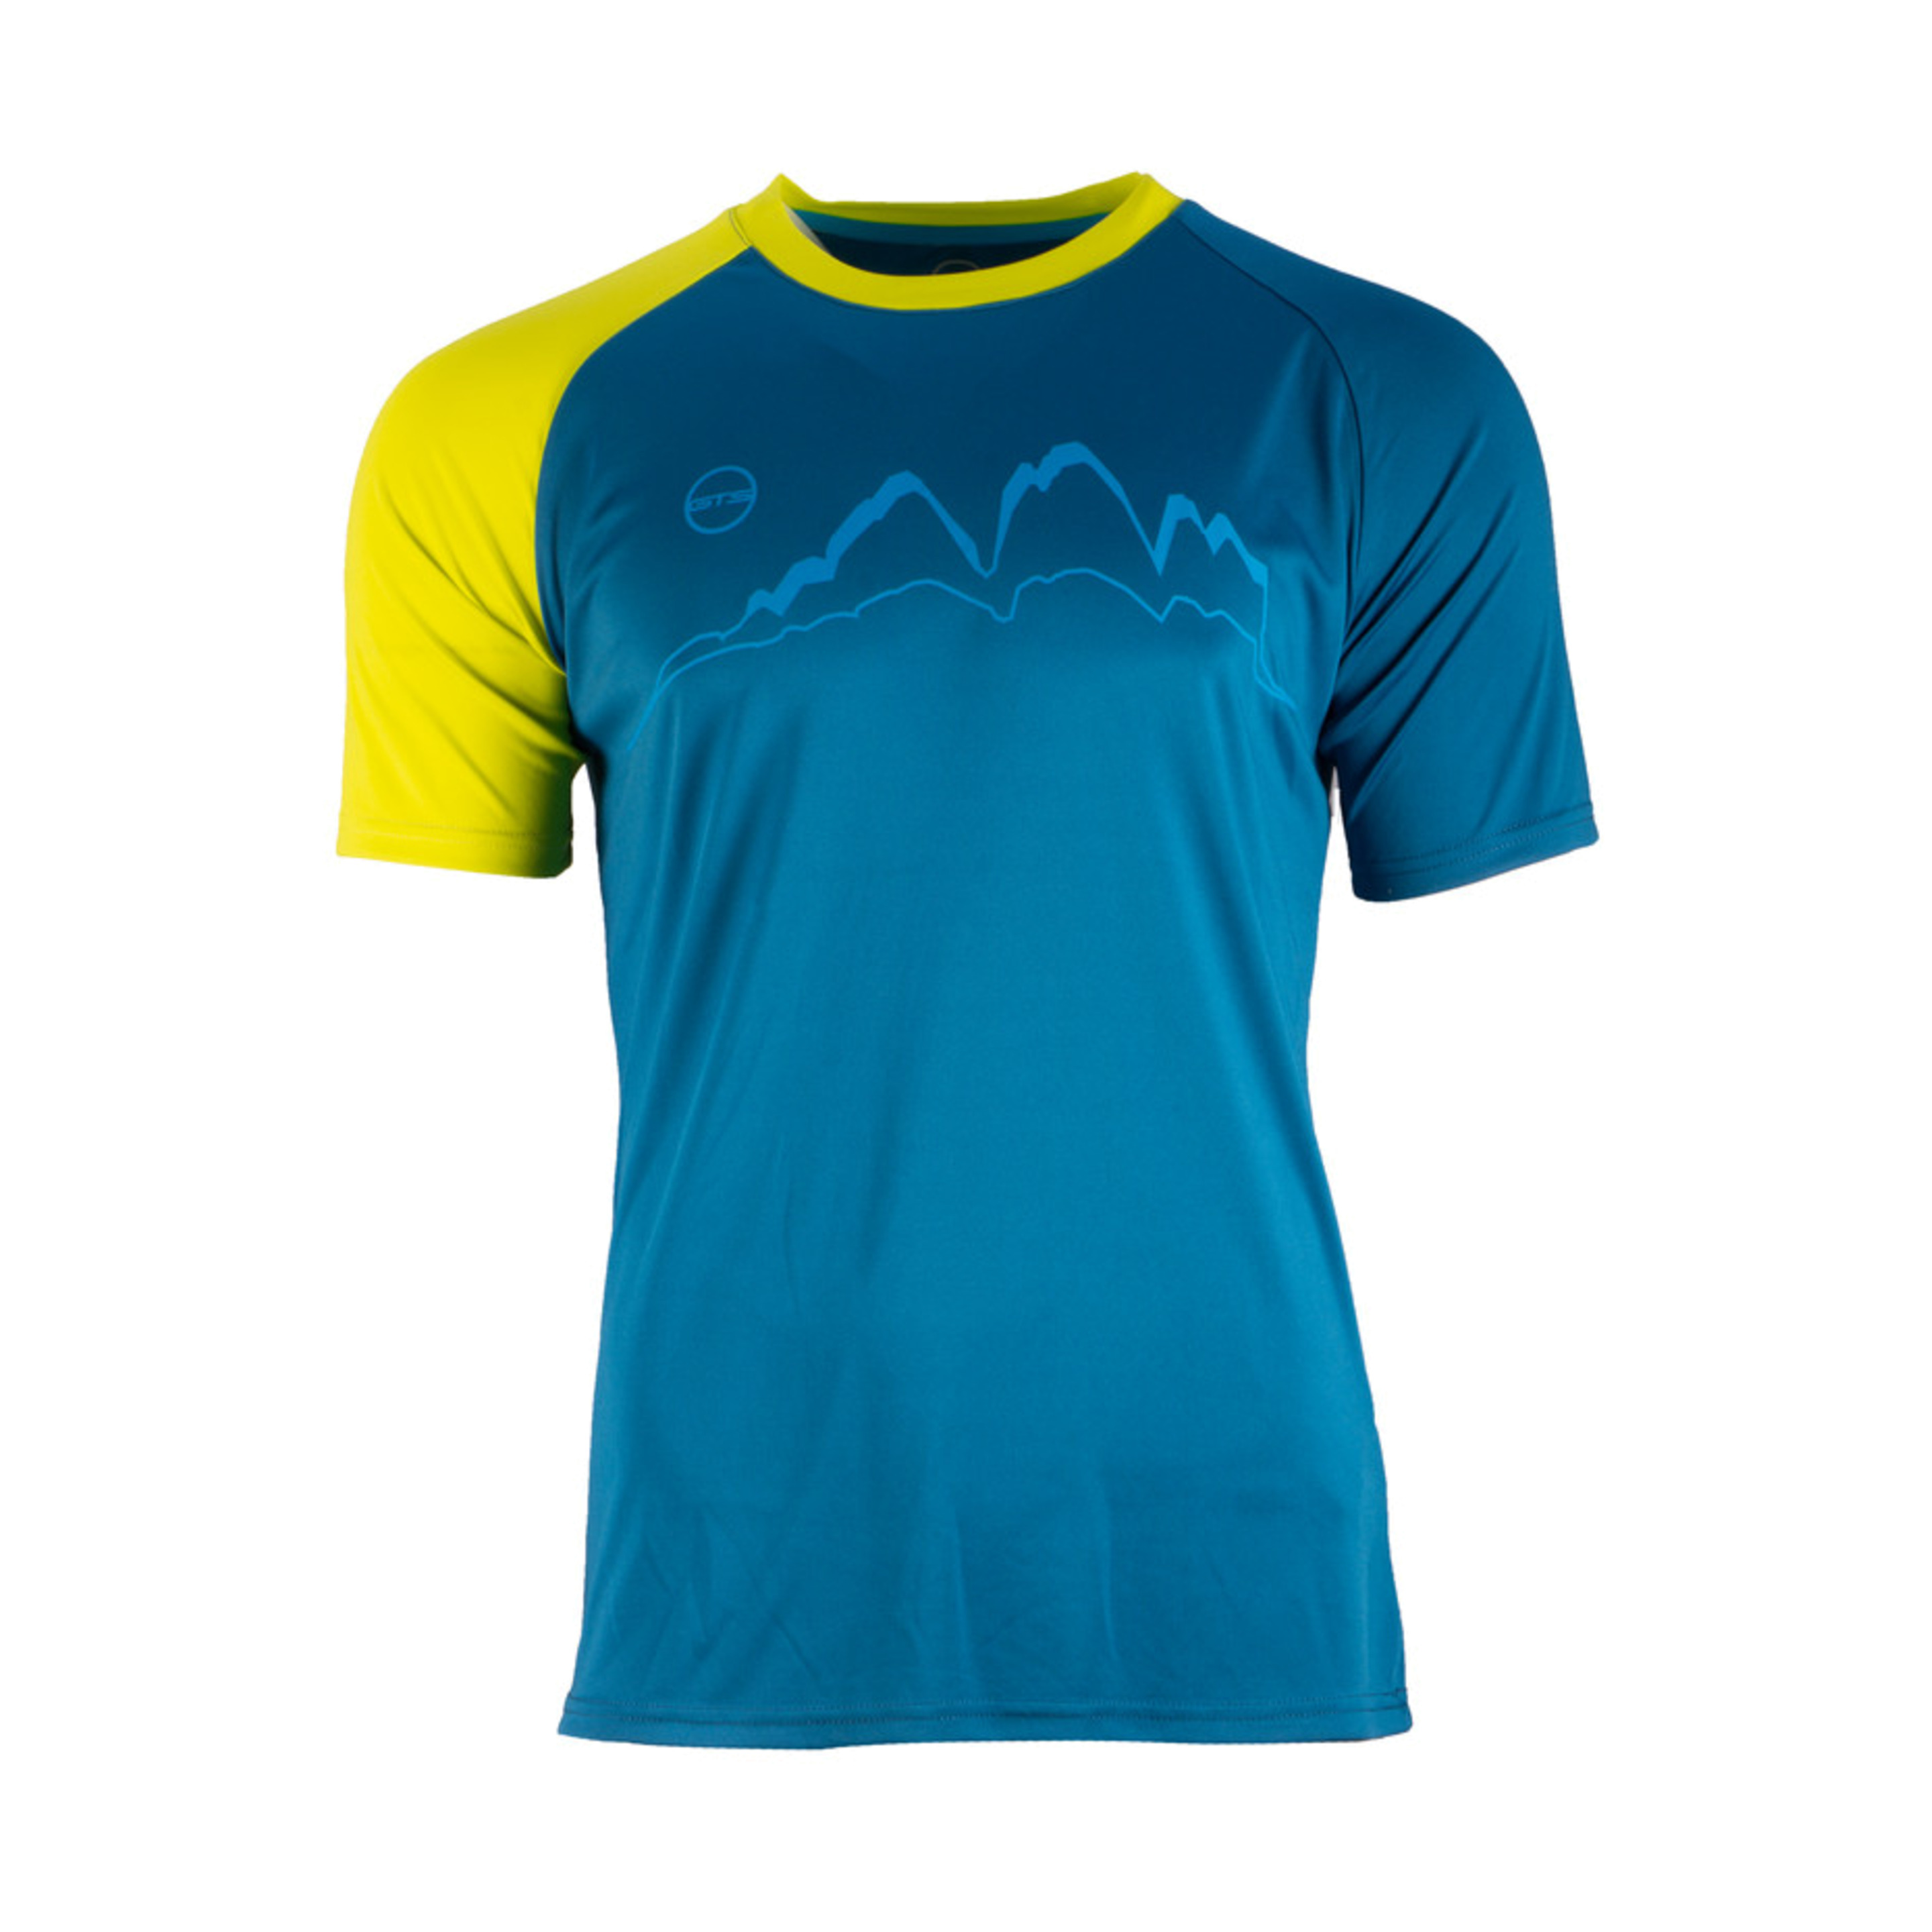 T-shirt Gts 211221m Homem Para Trail, Running E Atividades Ao Ar Livre.